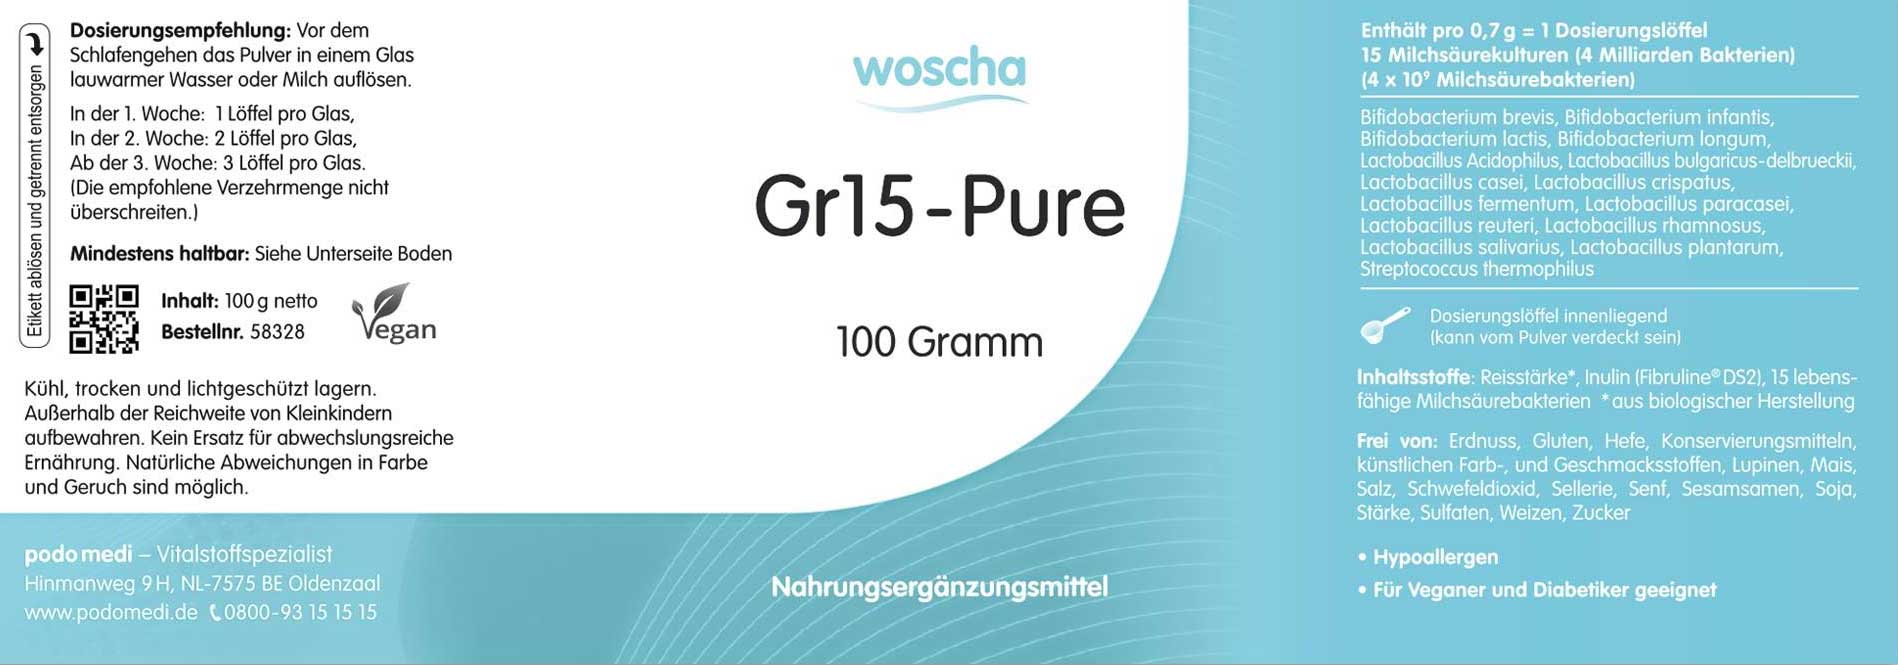 Woscha GR15-Pure von podo medi beinhaltet 100 Gramm Pulver Etikett